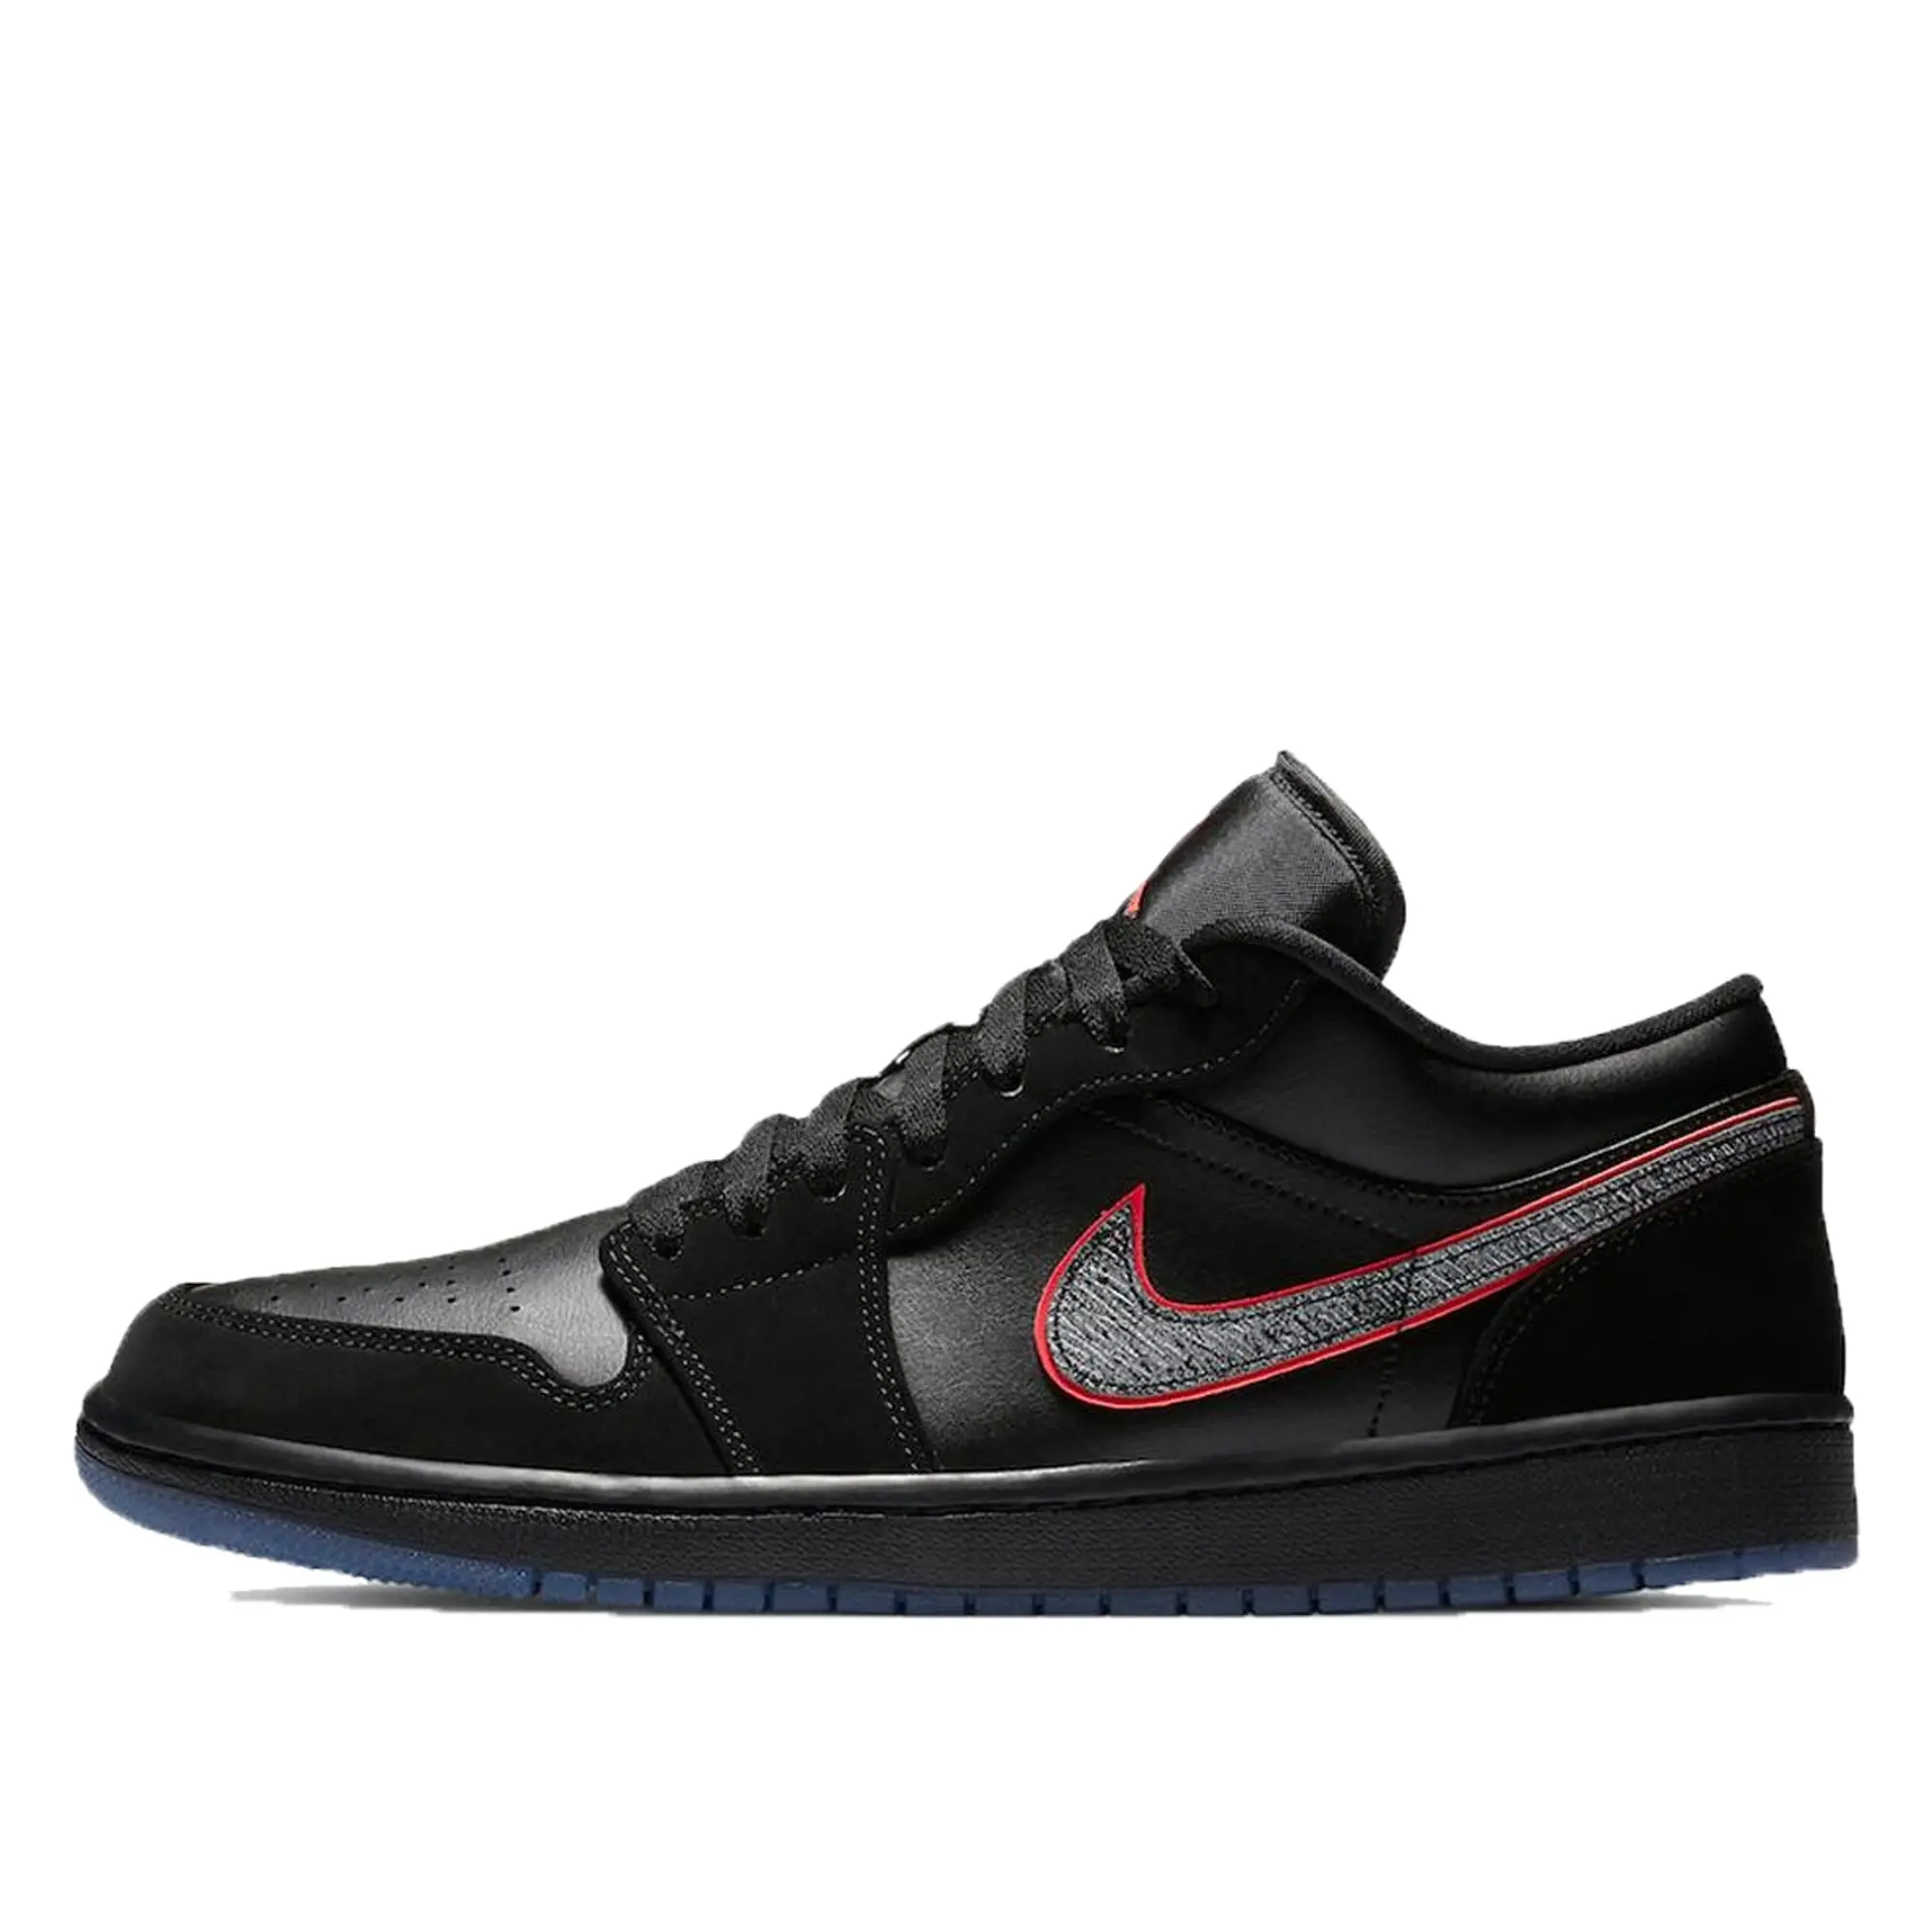 Nike Air Jordan 1 Low Black Red Orbit